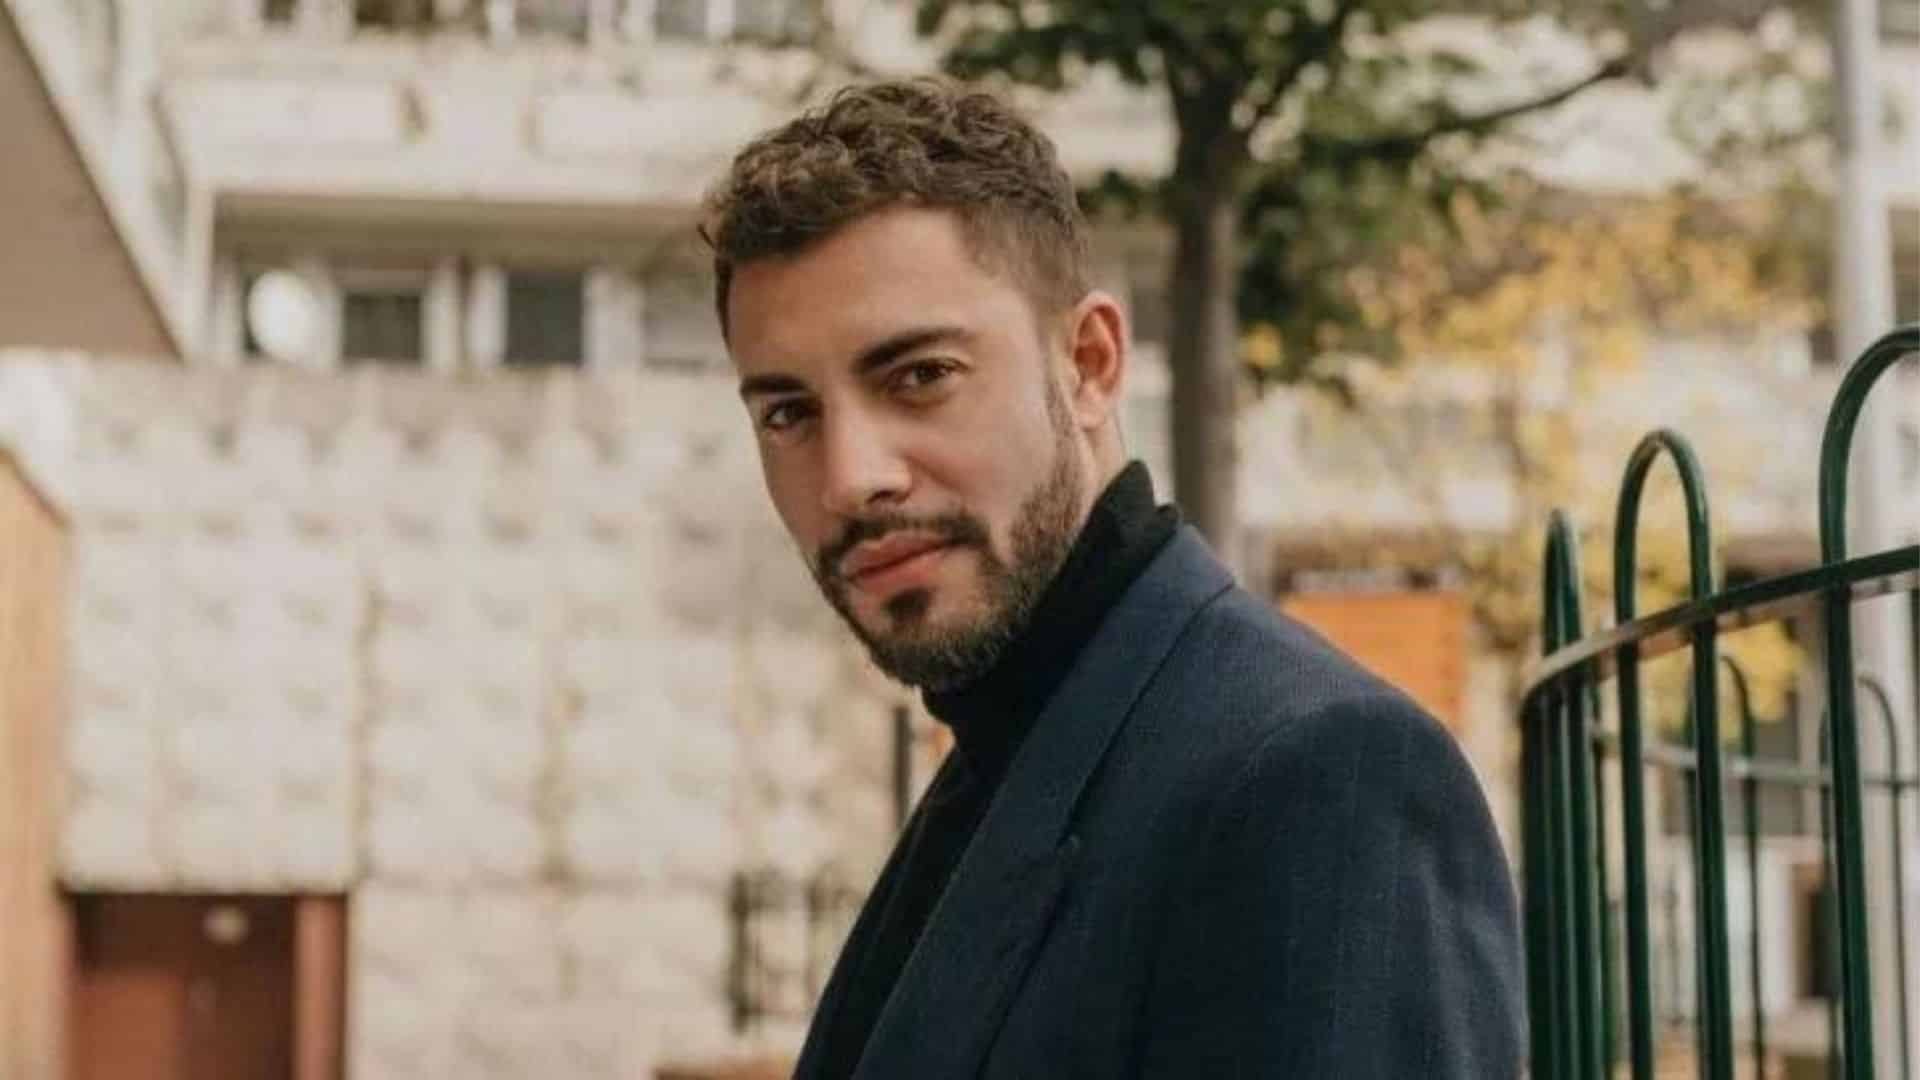 'Tu me manques tellement' : la dernière compagne de Marwan Berreni s'exprime après la découverte de son corps